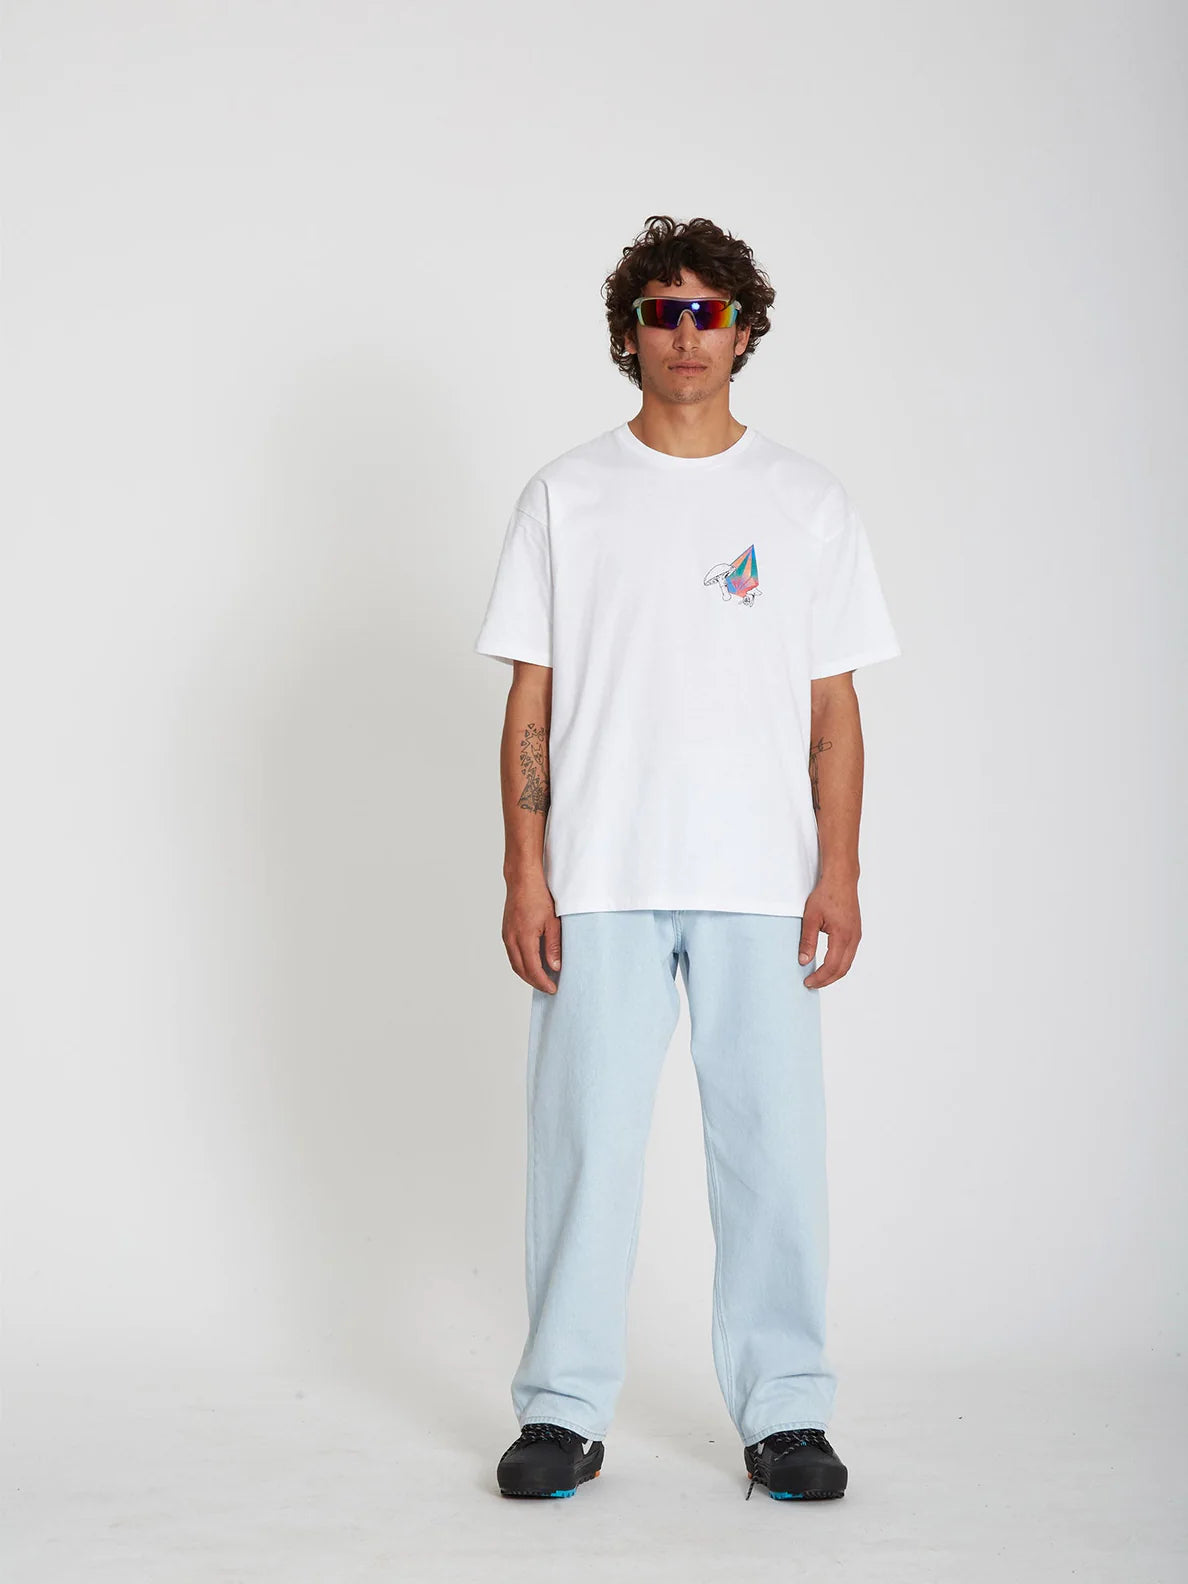 Volcom Chrissie Abbott x French 2 T-Shirt Weiß | Meistverkaufte Produkte | Neue Produkte | Neueste Produkte | surfdevils.com